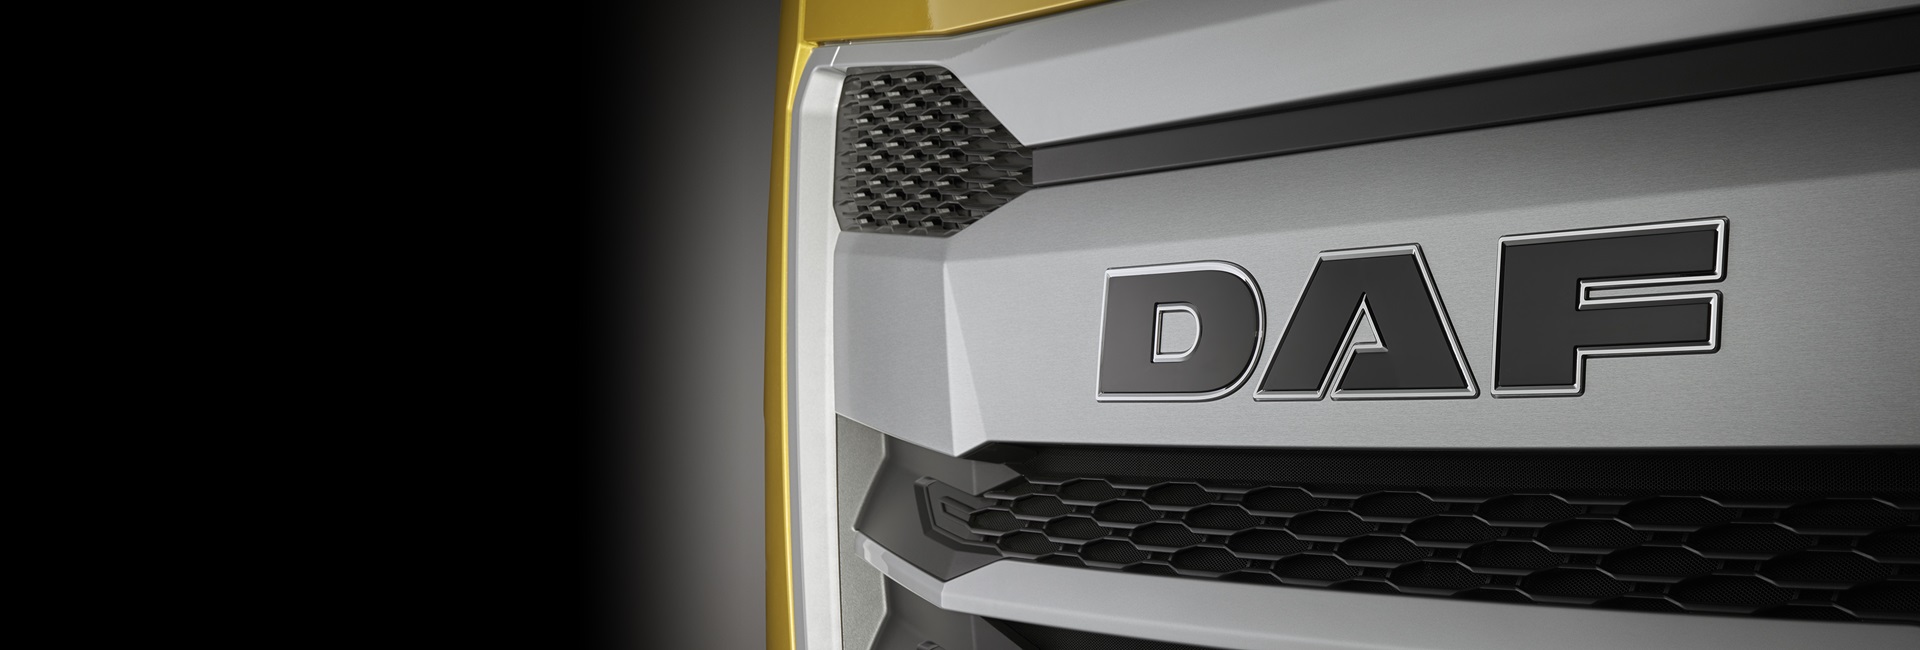 DAF Trucks Global – Choose your Country or Market - DAF Trucks N.V.